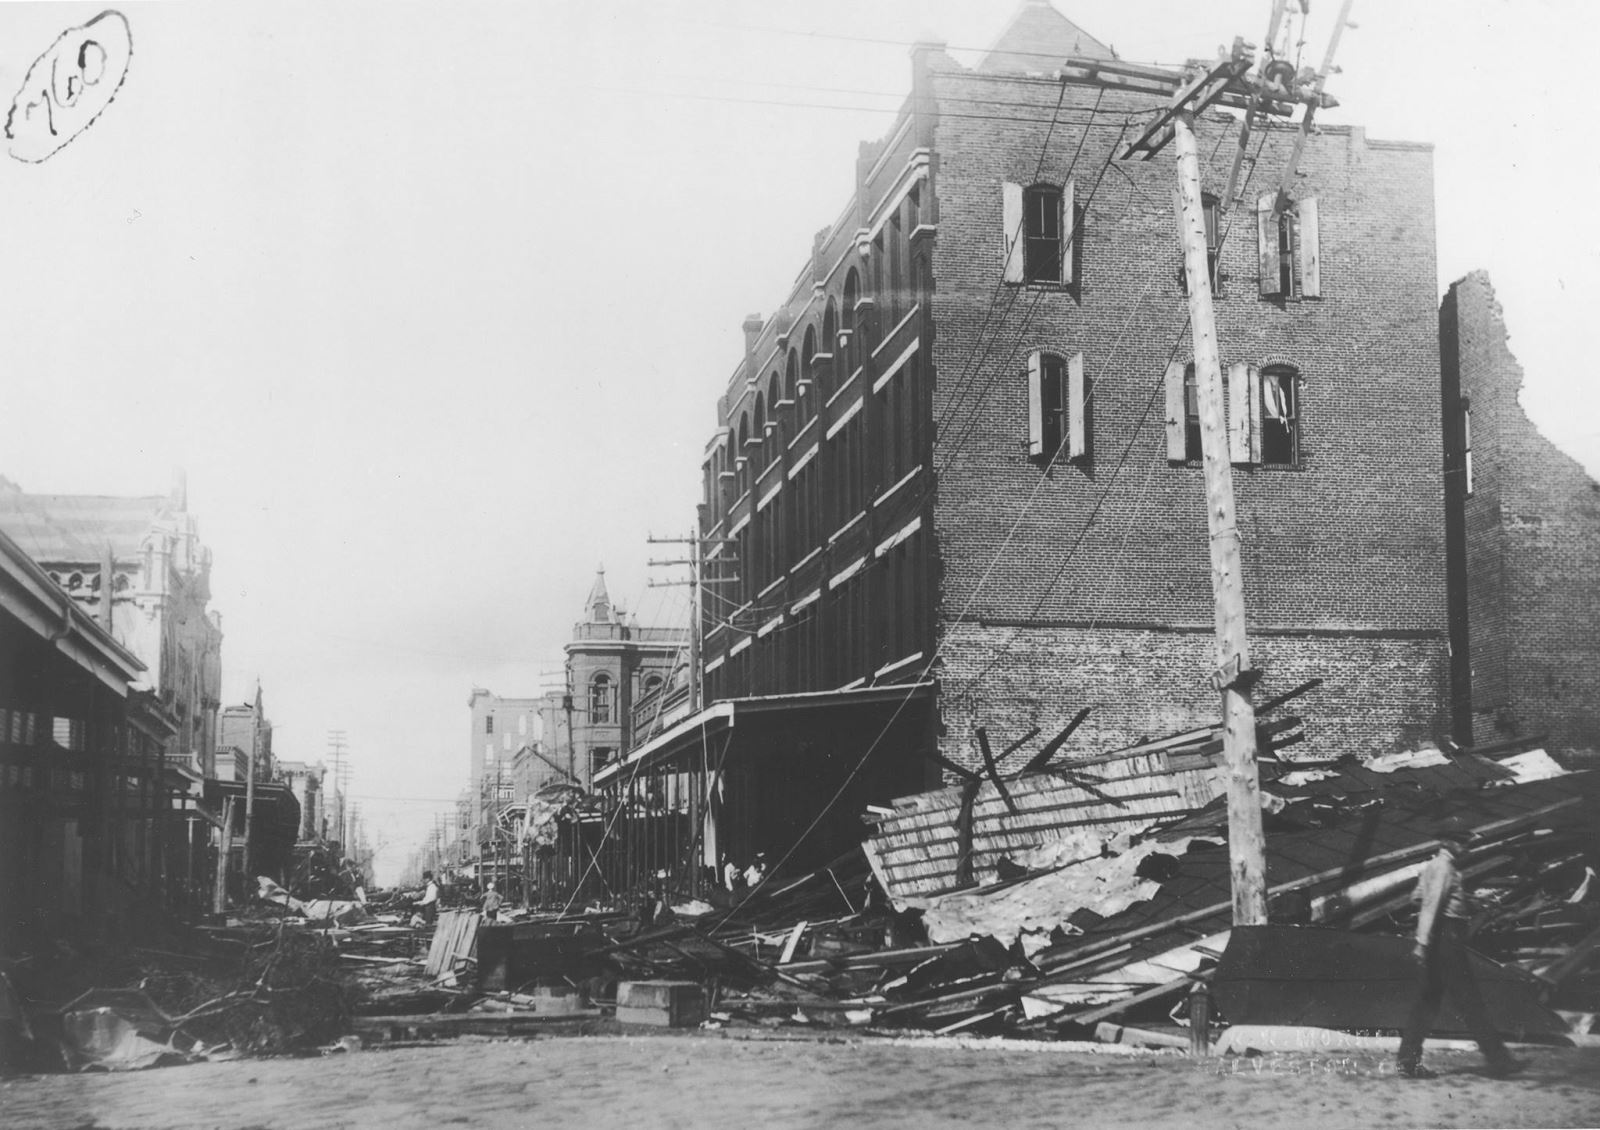 1900 damage